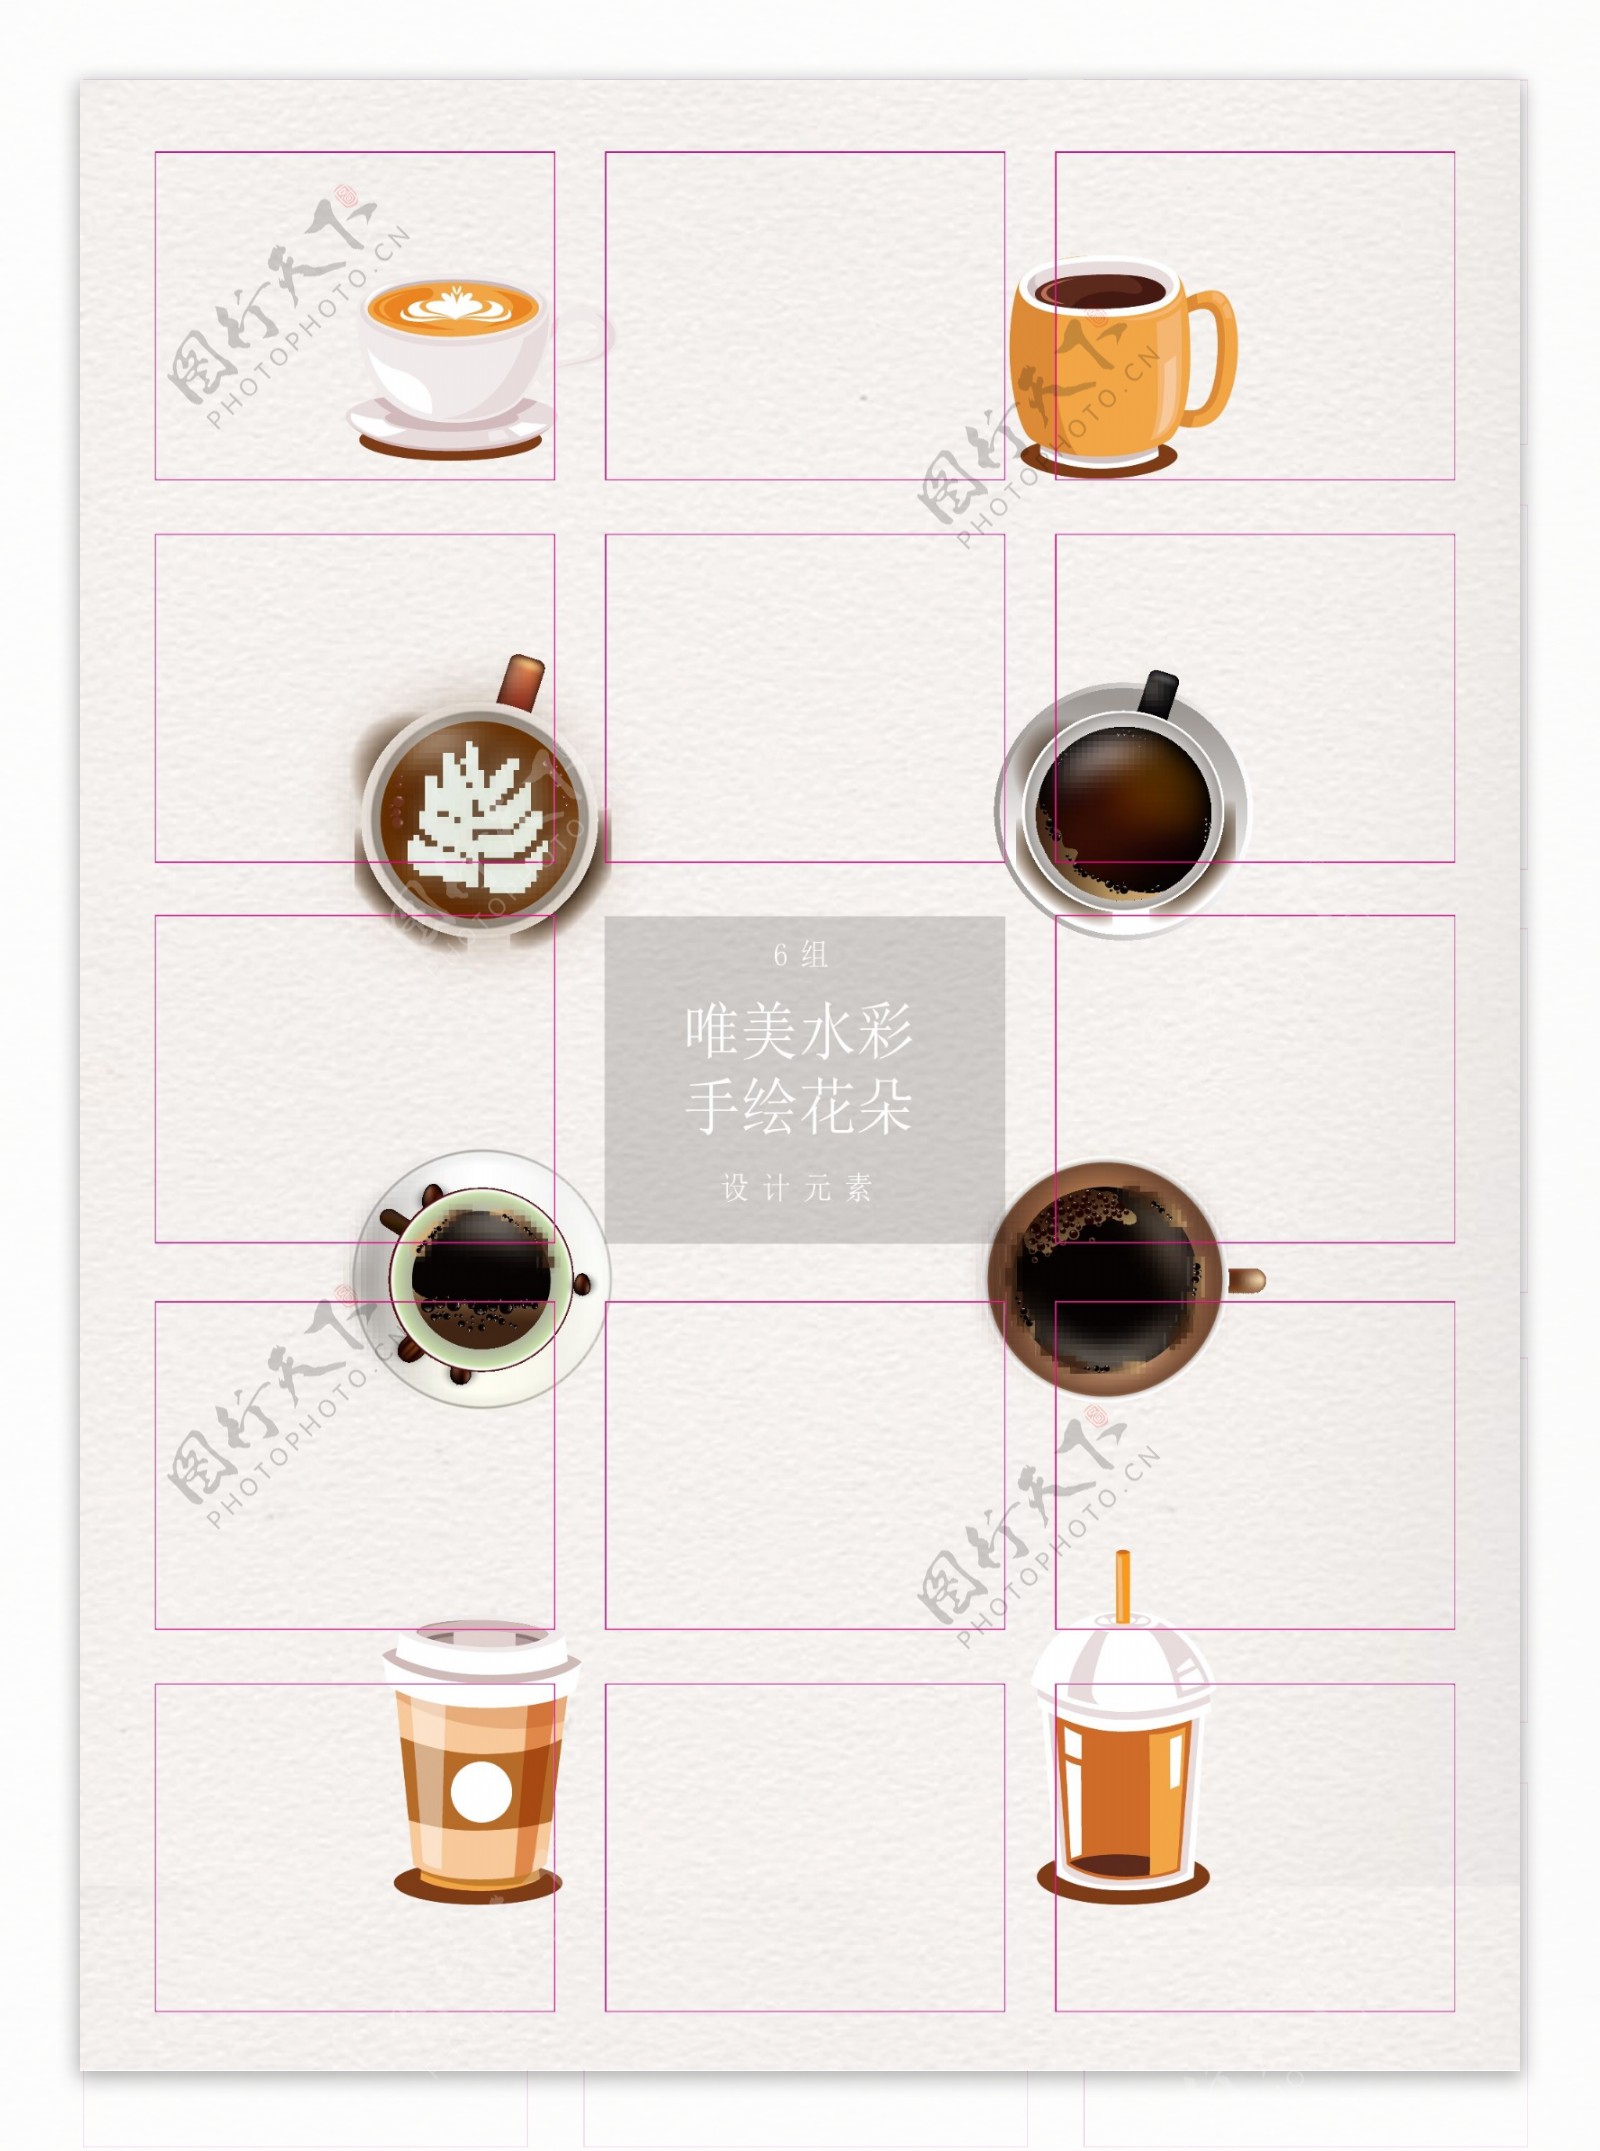 创意咖啡设计矢量素材